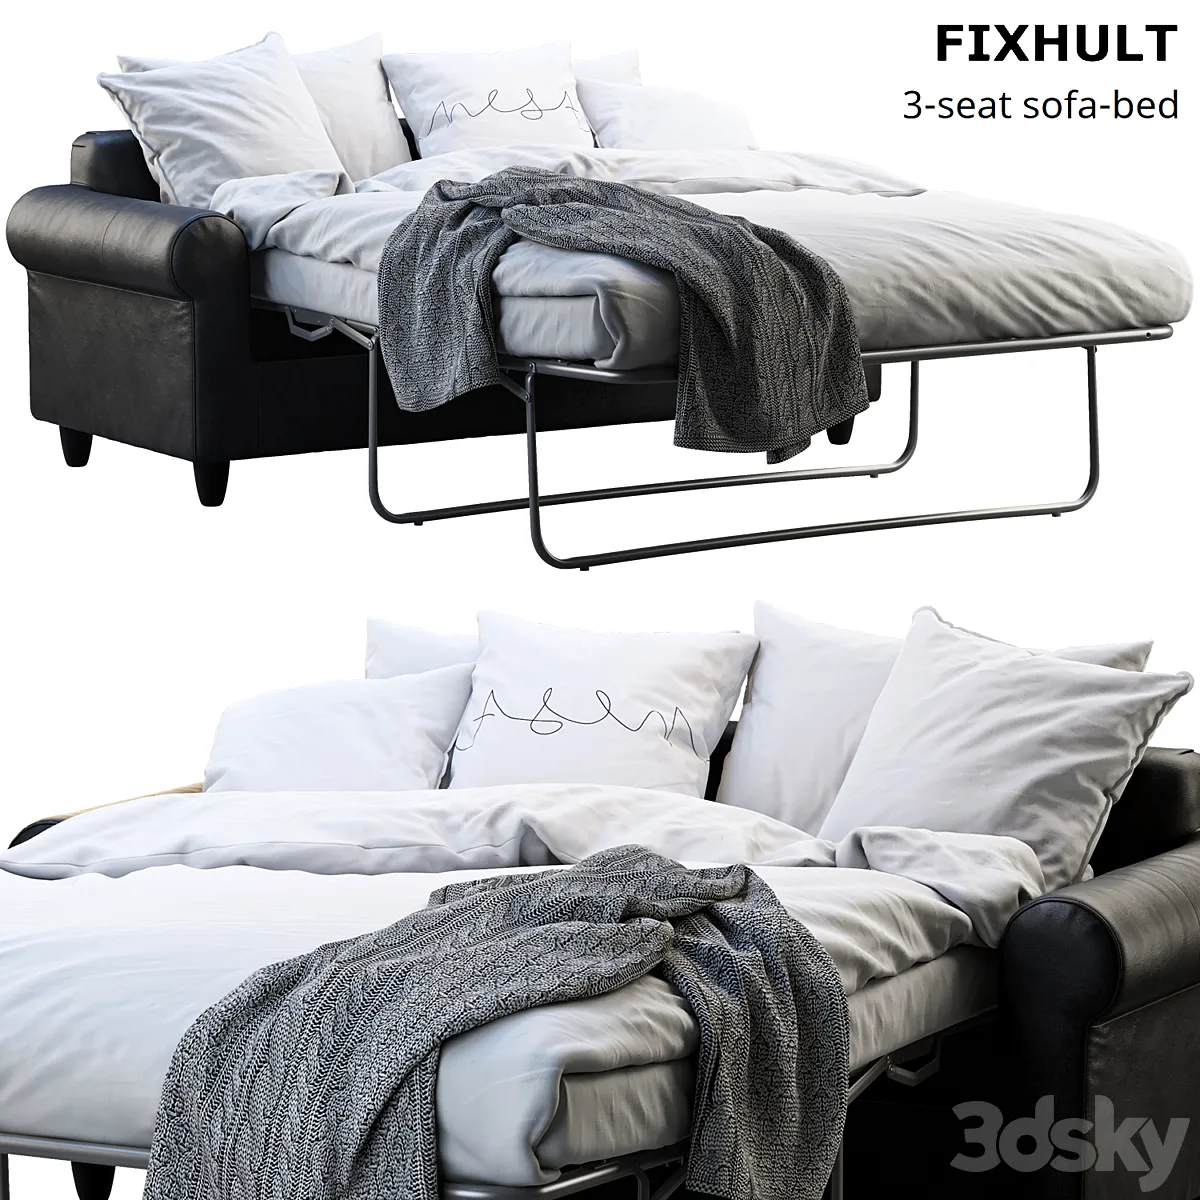 Ikea Fixhult sofa-bed - Bed - 3D model